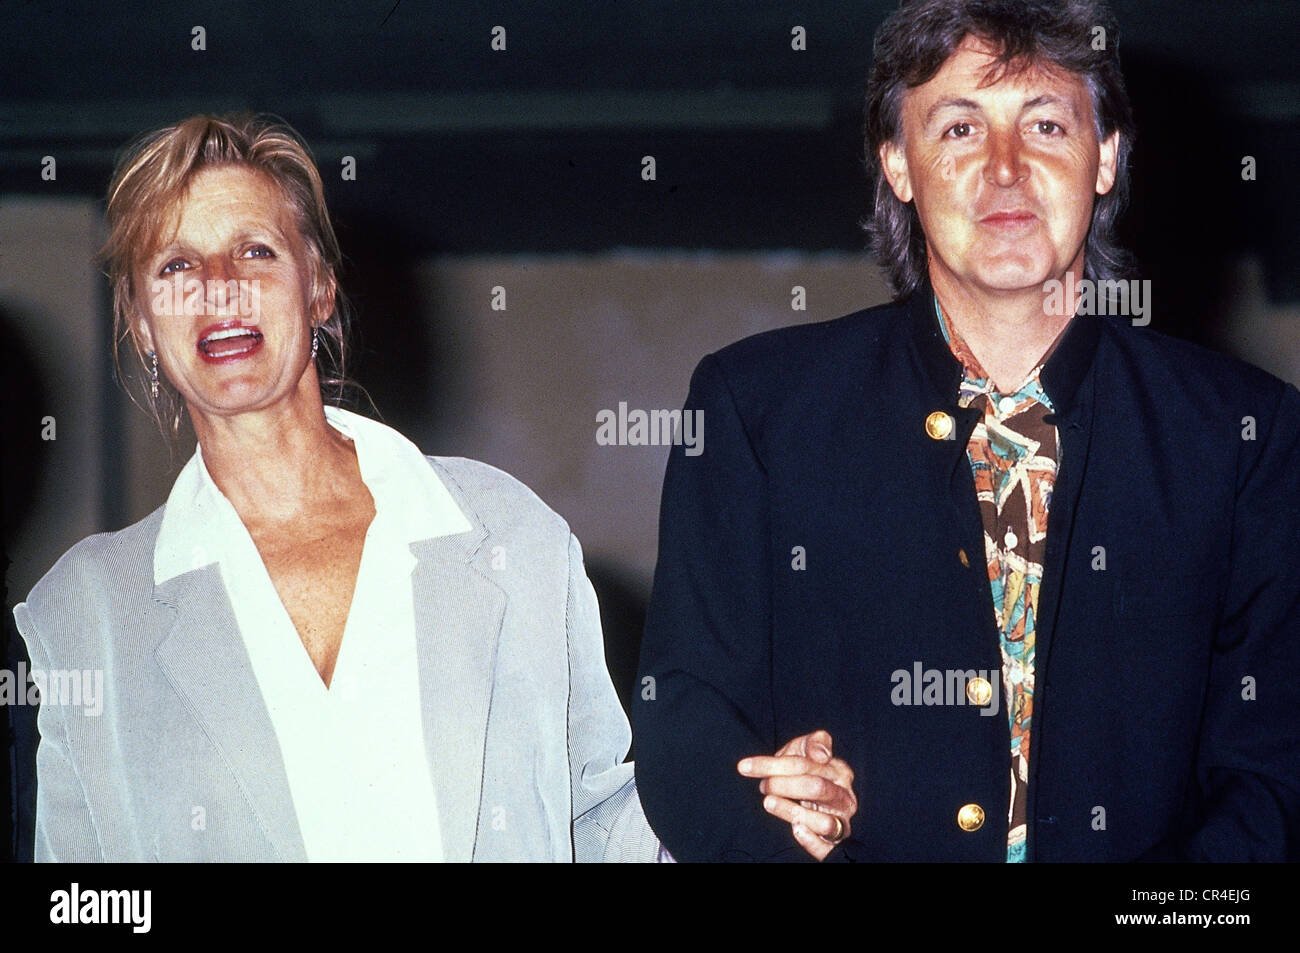 McCartney, Paul, * 18.6.1942, chanteur et musicien britannique (The Beatles), demi-longueur, avec sa femme Linda à Hambourg, Allemagne, 1991, Banque D'Images